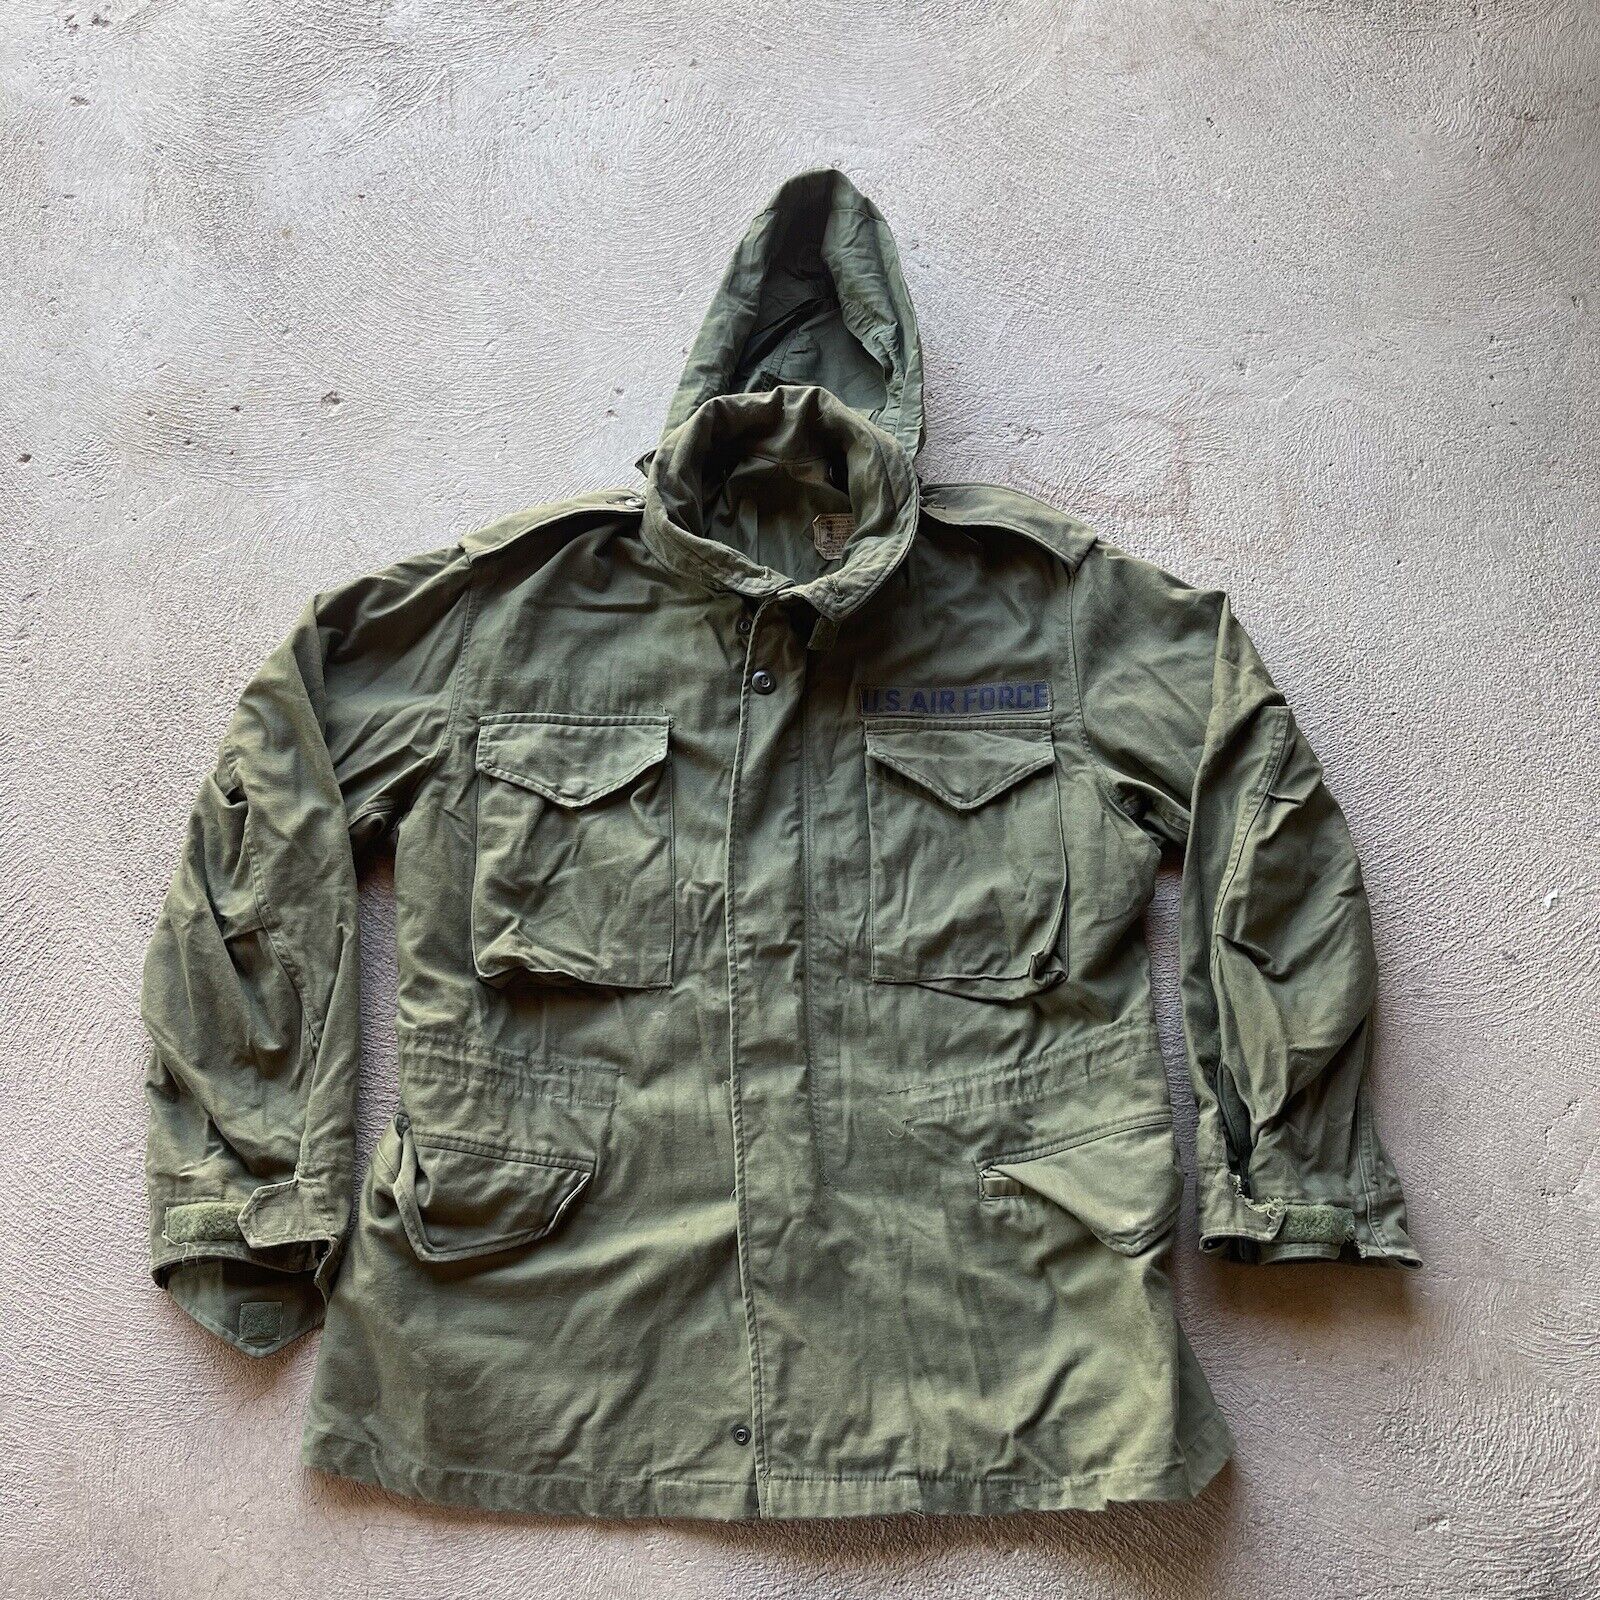 Vintage Military Jacket Medium Regular OG 107 Field Coat Sateen M65 Cold Weather